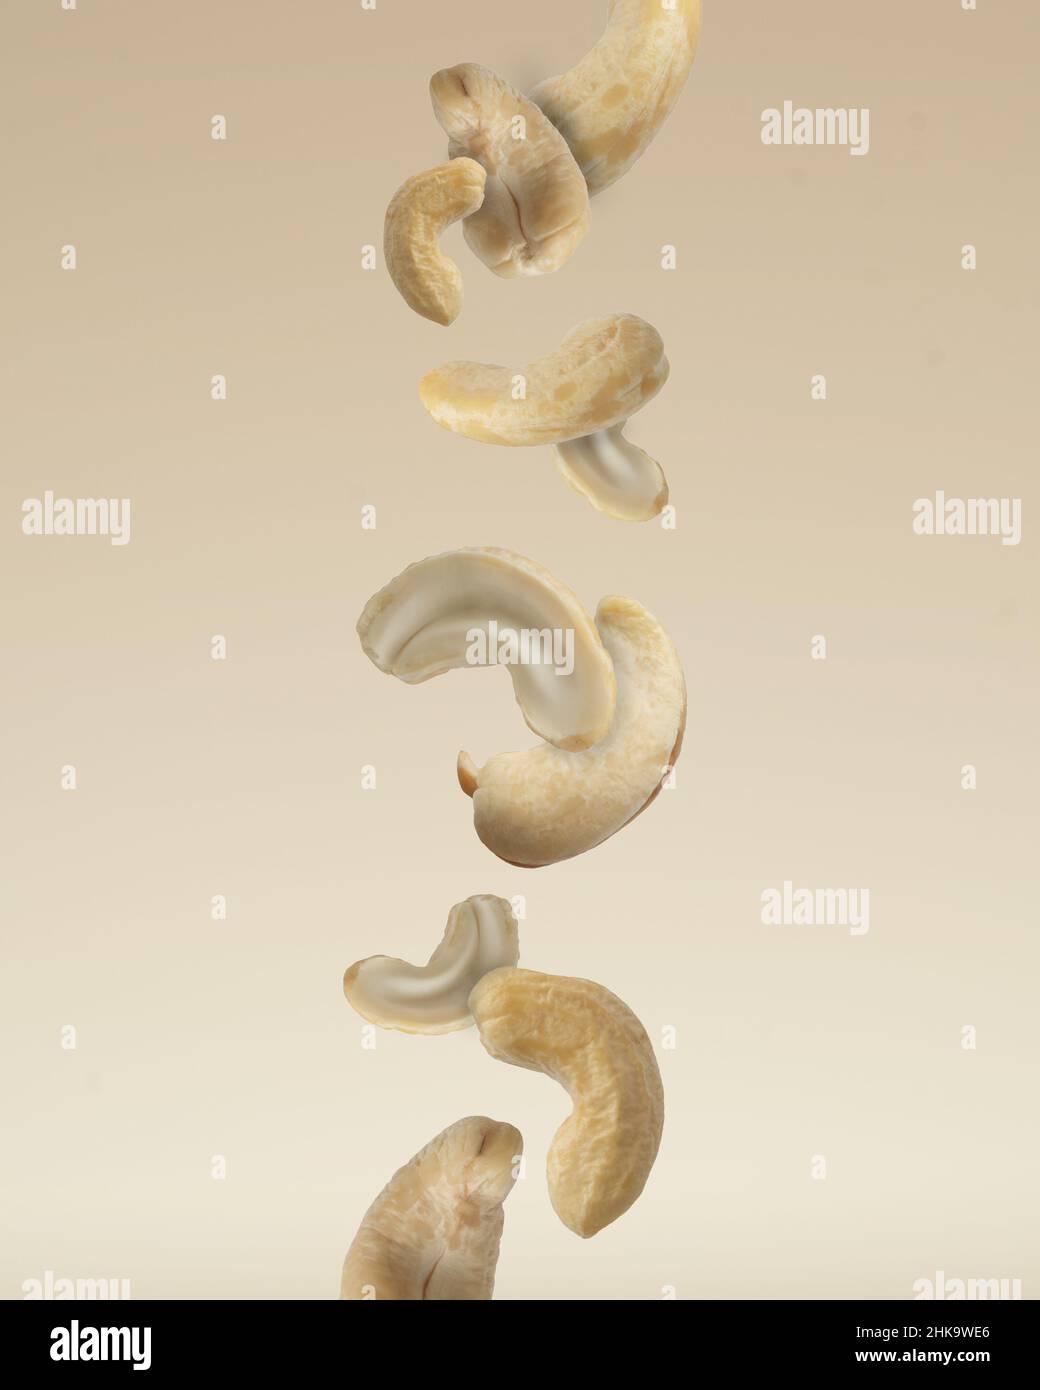 Close up photo of floating raw organic cashews on beige background. Stock Photo